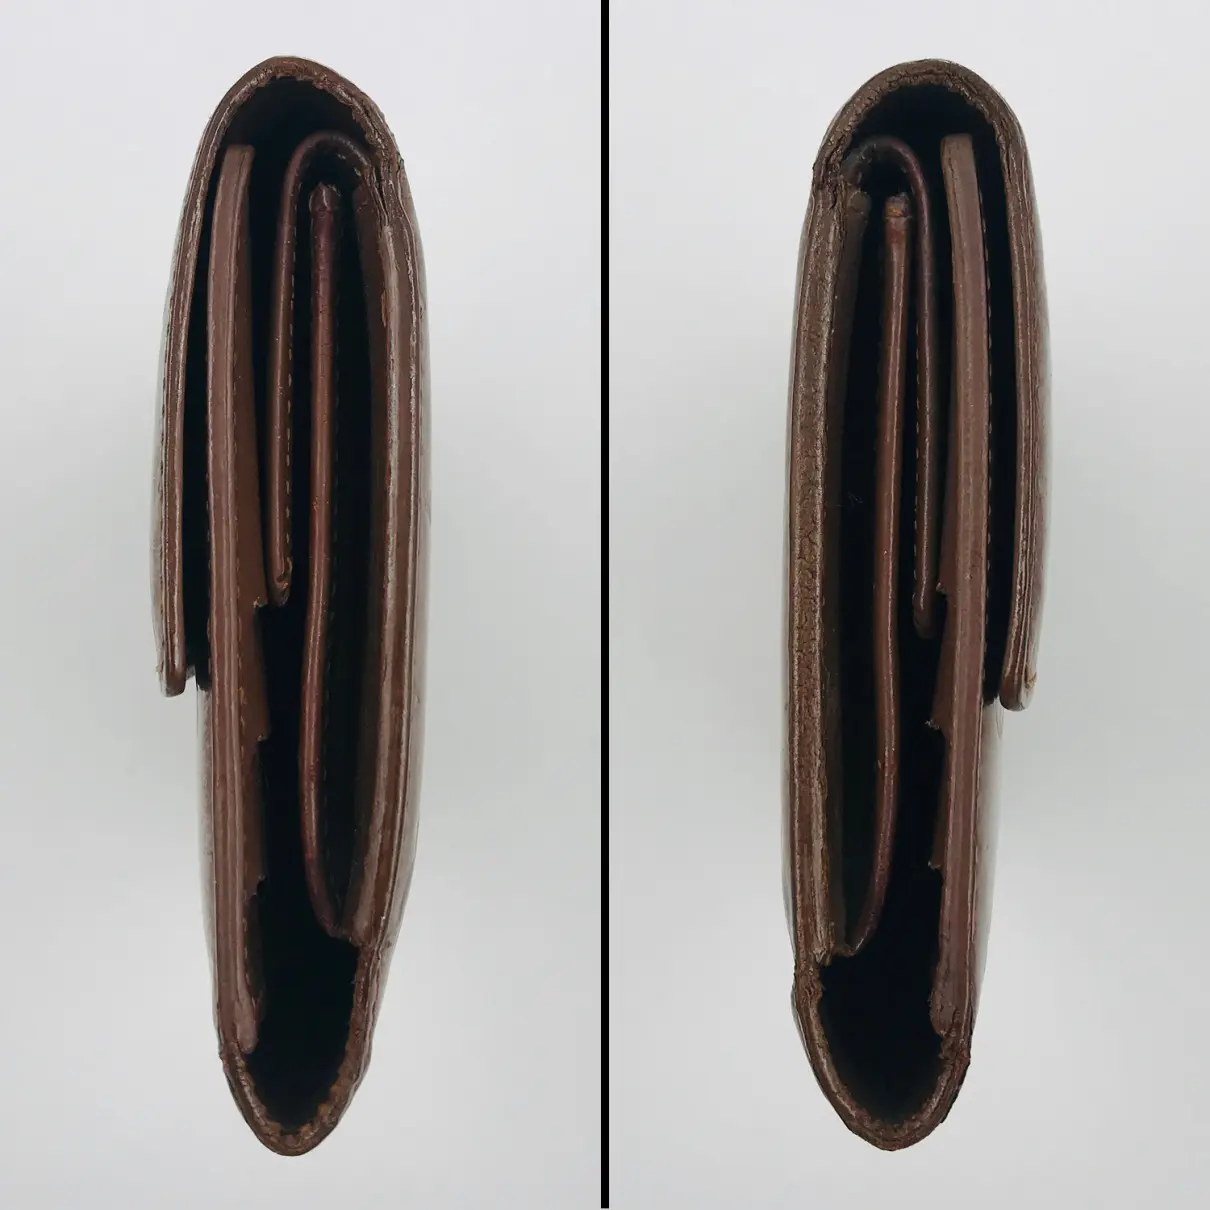 Patent leather wallet Louis Vuitton - Vintage